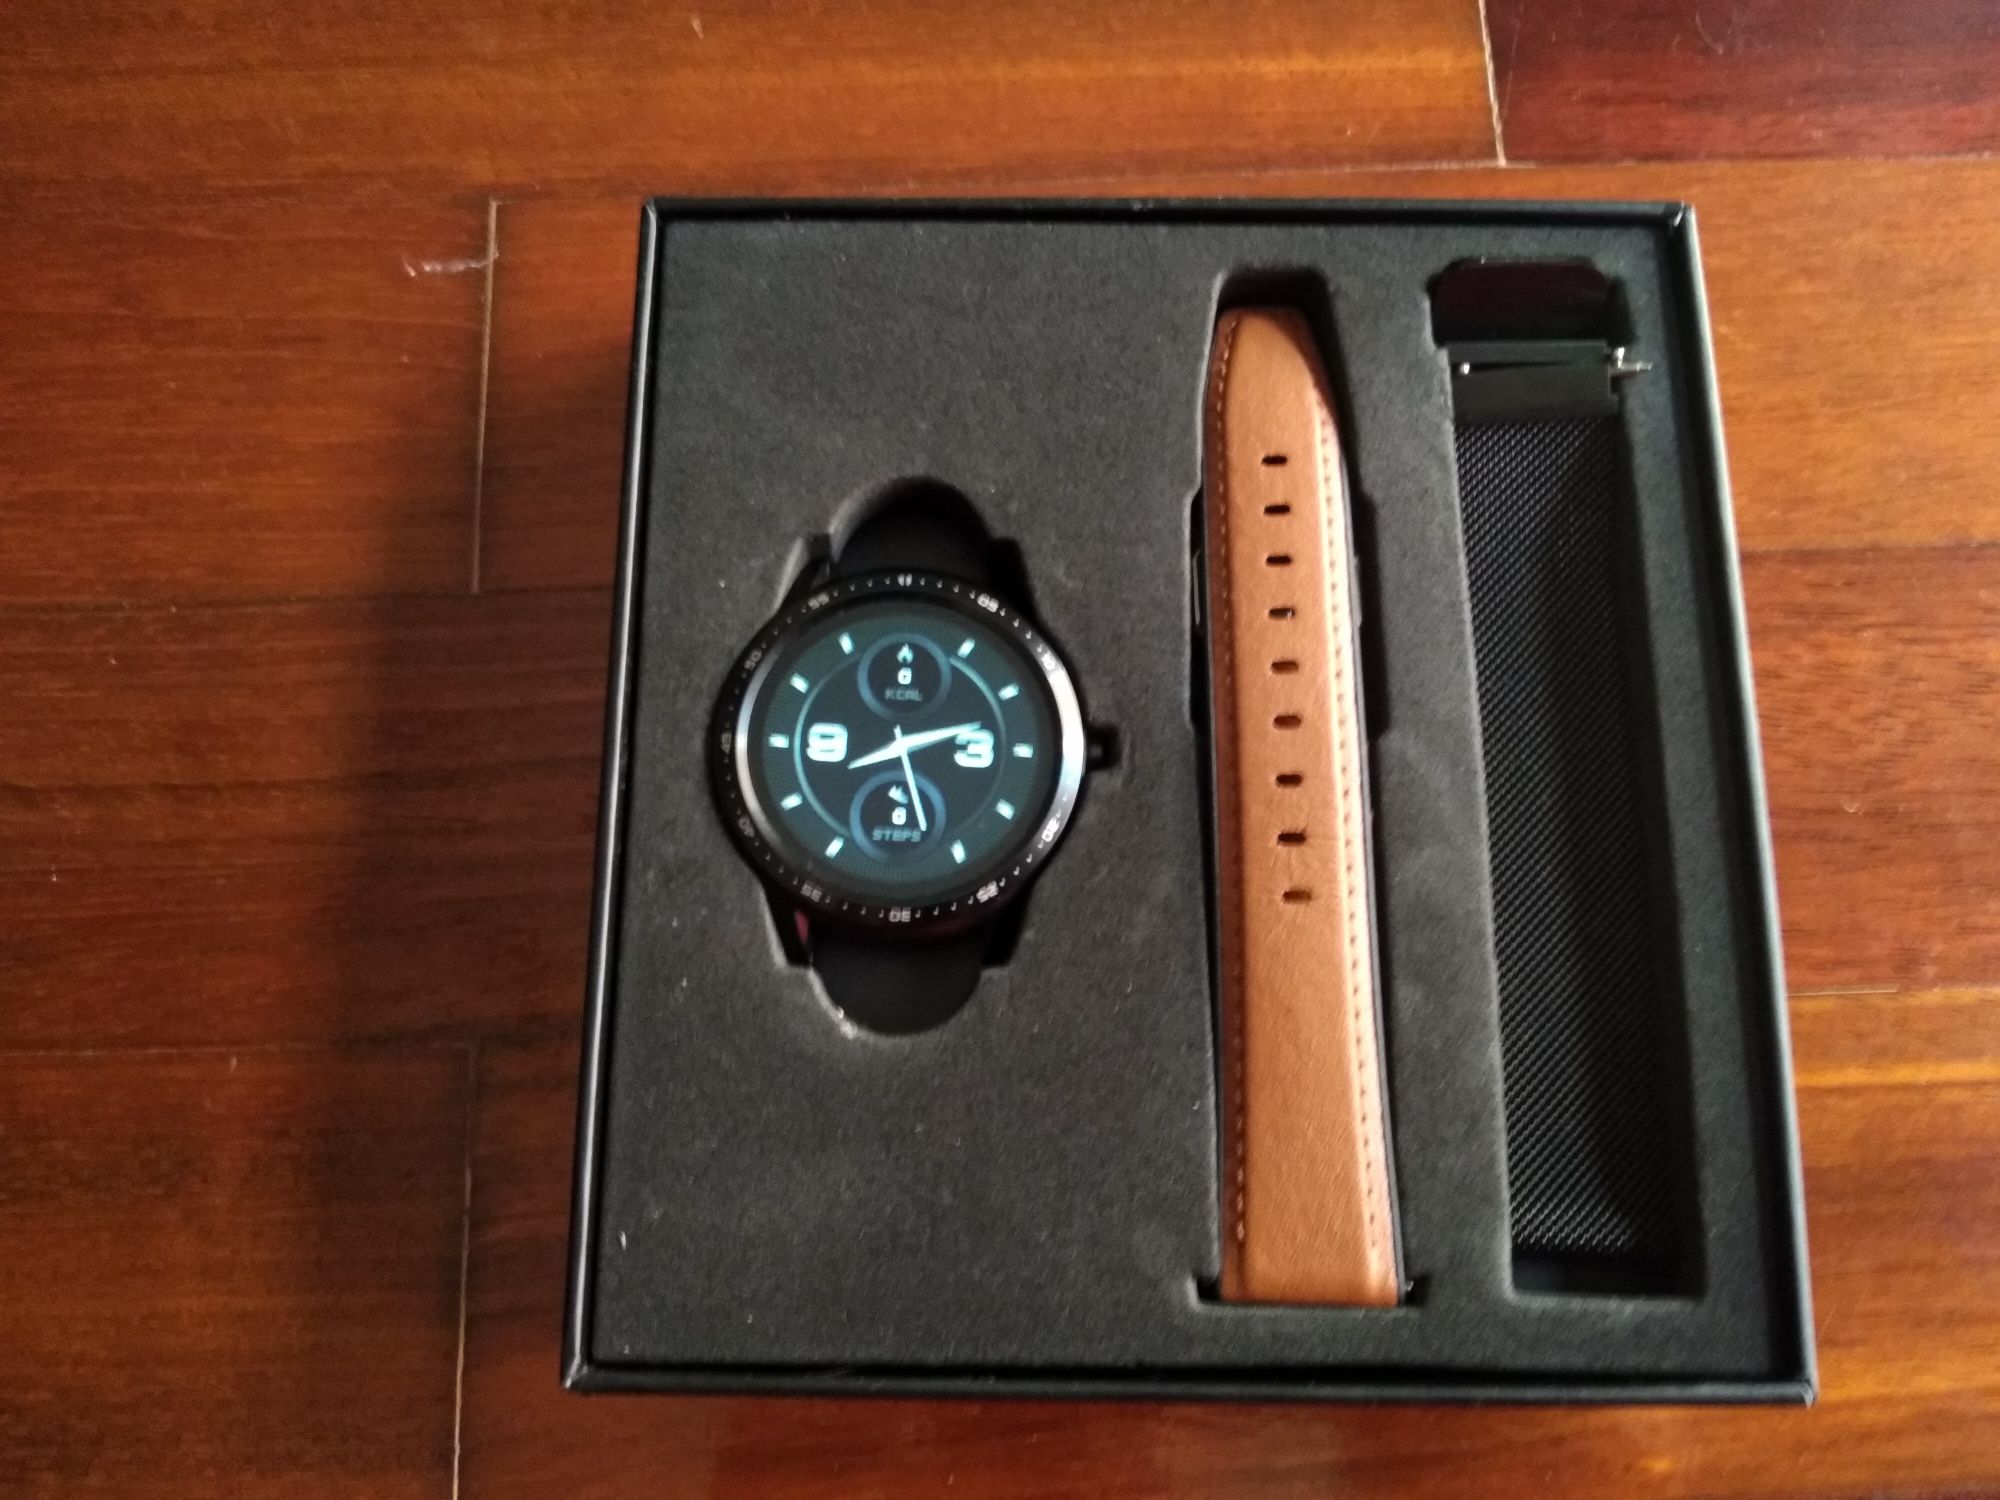 Smartwatch Maxcom Fit FW43 Cobalt 2